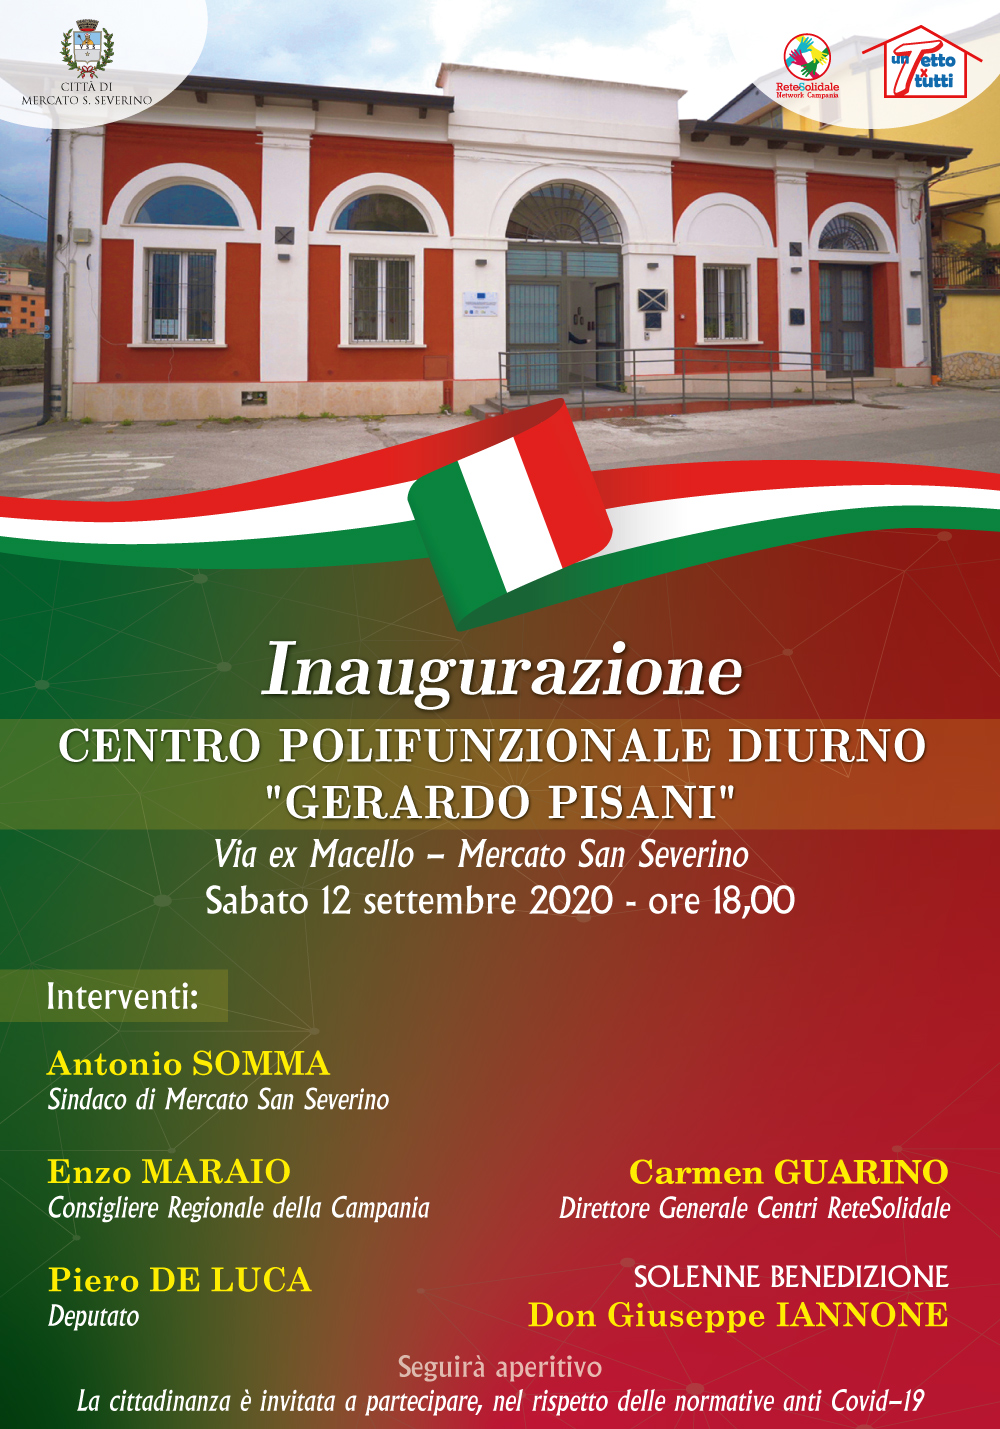 Inaugurazione co-housing “A casa di Francesca e Giovanna”. Venerdì 4 settembre 2020 a Pontecagnano Faiano